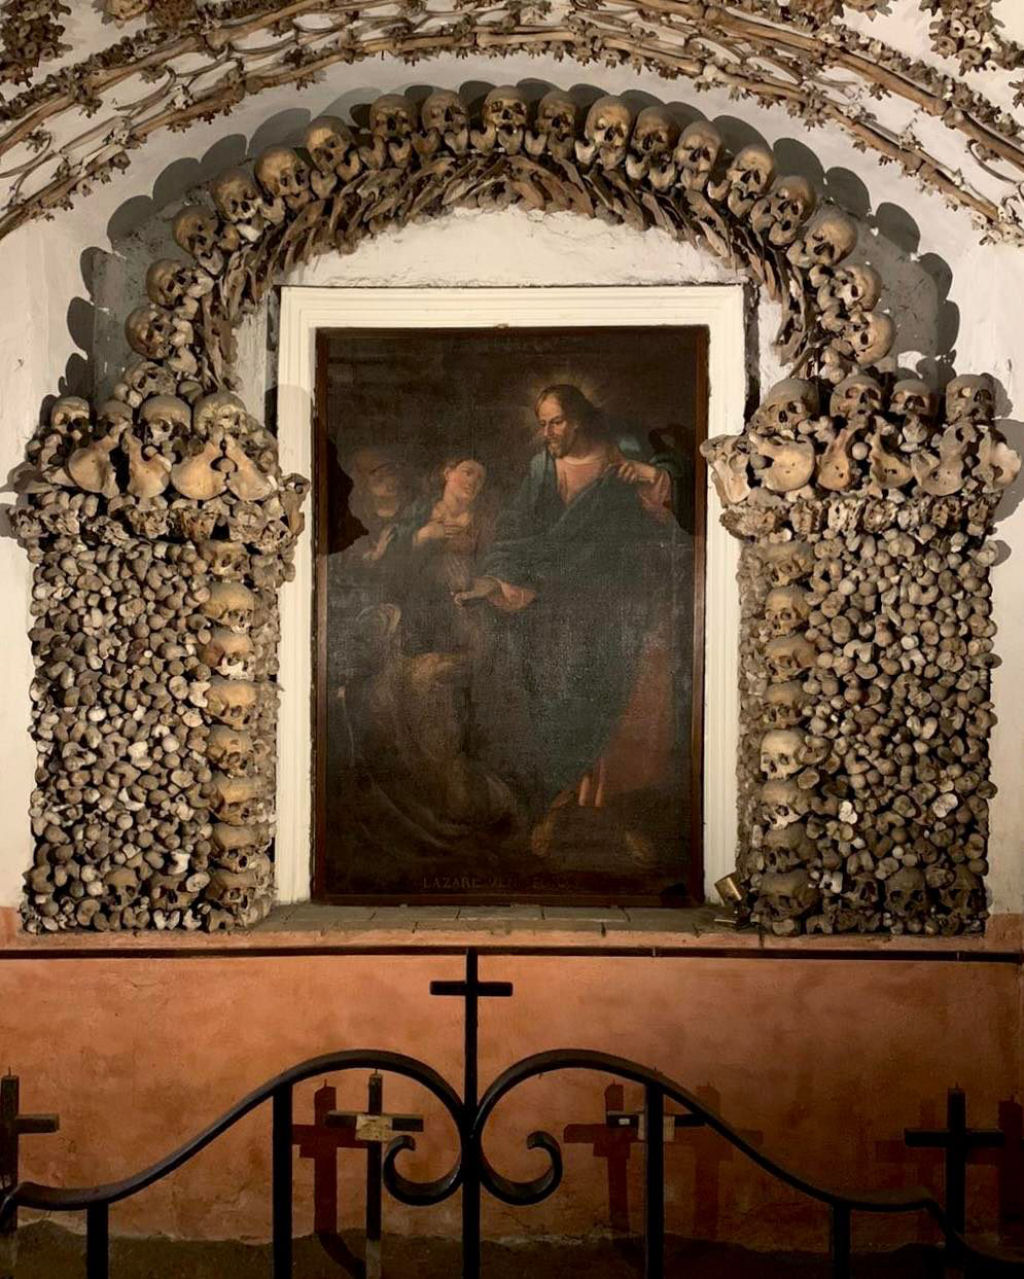 Decorada com 4.000 esqueletos, esta igreja far voc refletir sobre sua prpria mortalidade